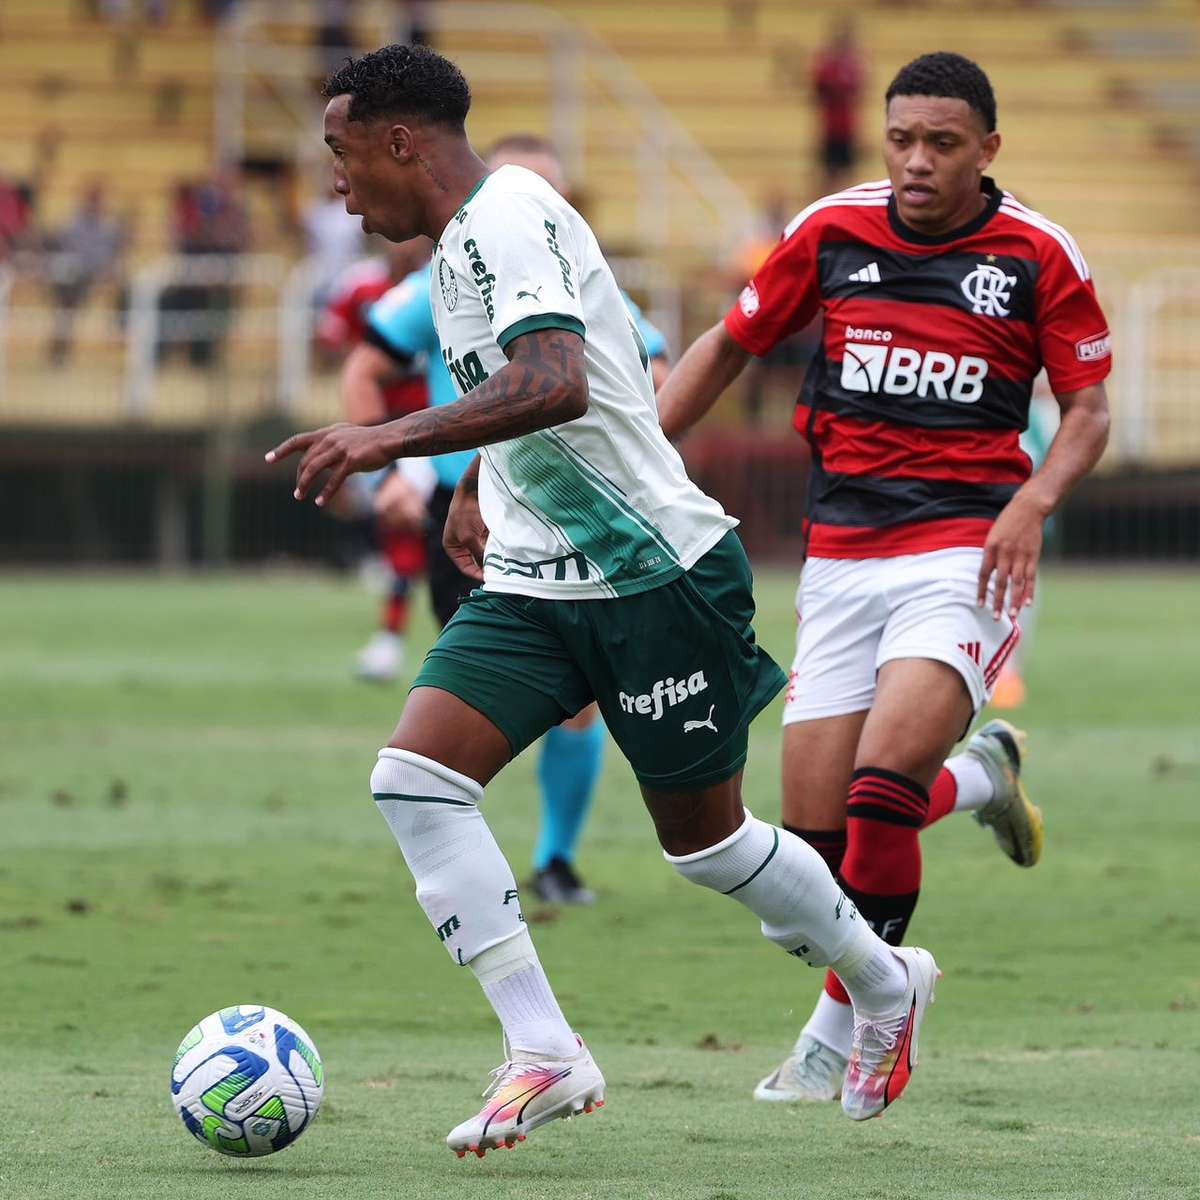 Nos pênaltis, Flamengo supera o Palmeiras e conquista Brasileiro Sub-20